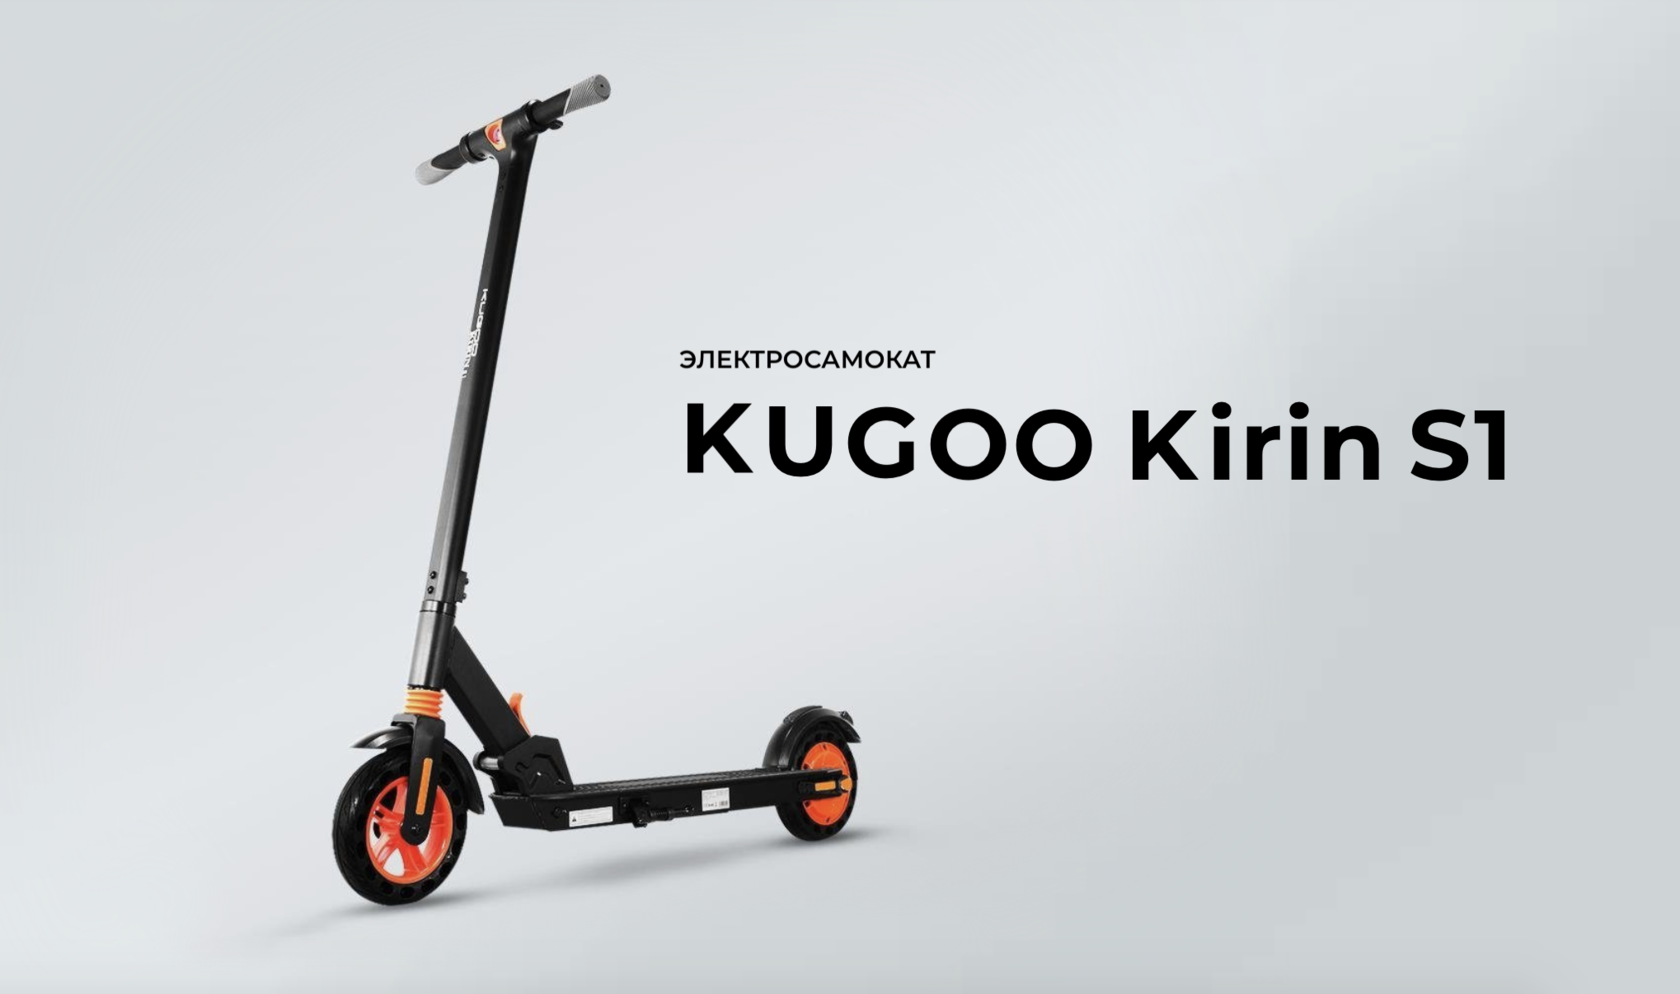 Куго кирин цена. Самокат Kugoo s1. Электросамокат Kugoo Kirin s1 Pro. Kugoo s1 Plus. Электросамокат Kugoo Kirin s2 Pro.